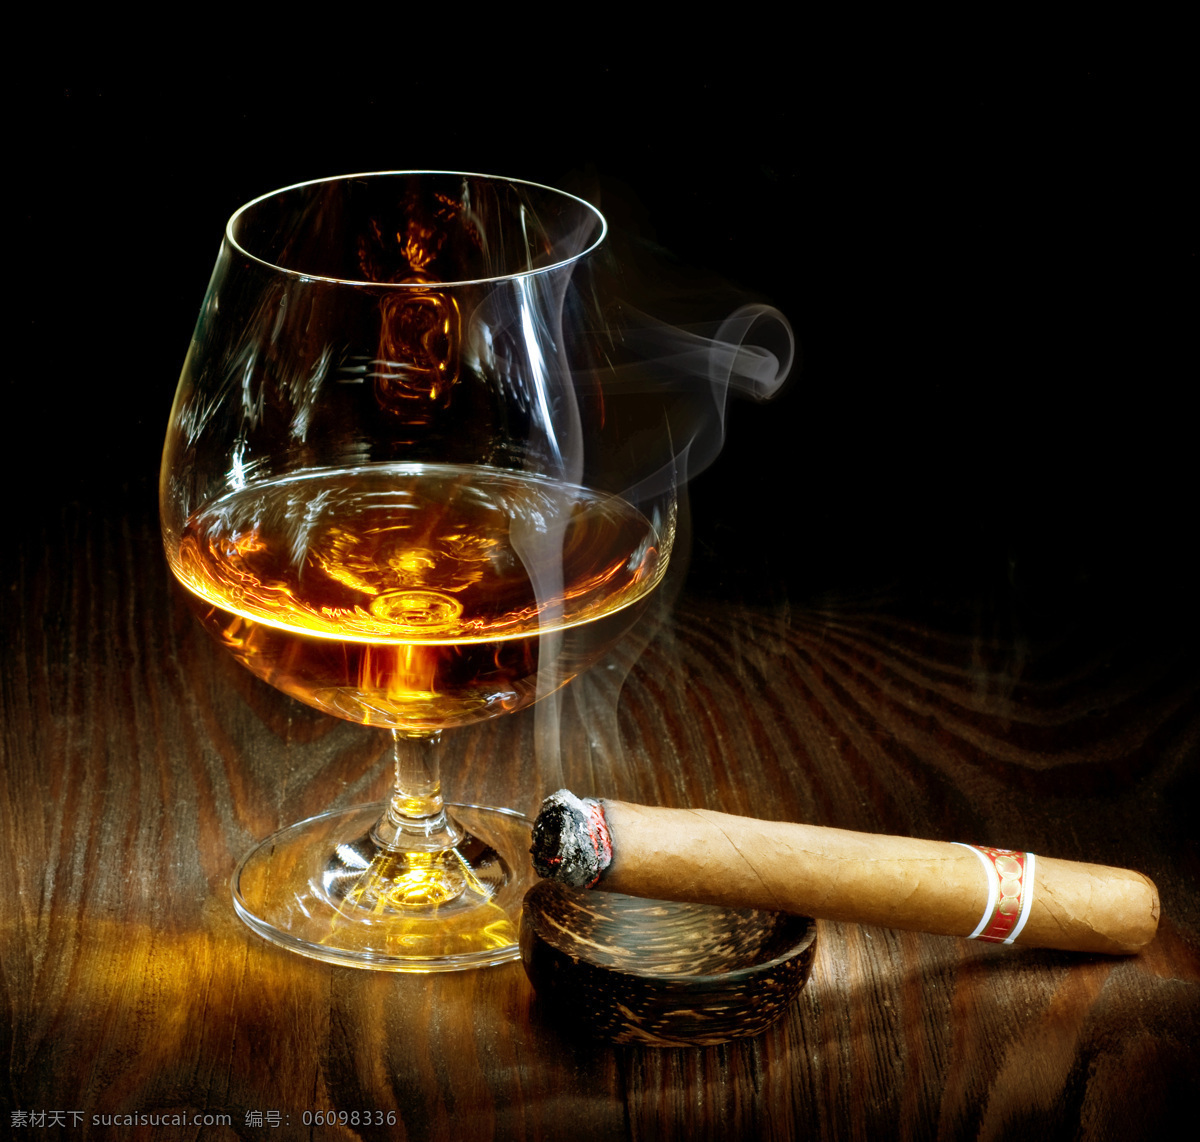 雪茄 高档 洋酒 高脚杯 威士忌 高档洋酒 美酒 酒水饮料 玻璃酒杯 杯子 酒类图片 餐饮美食